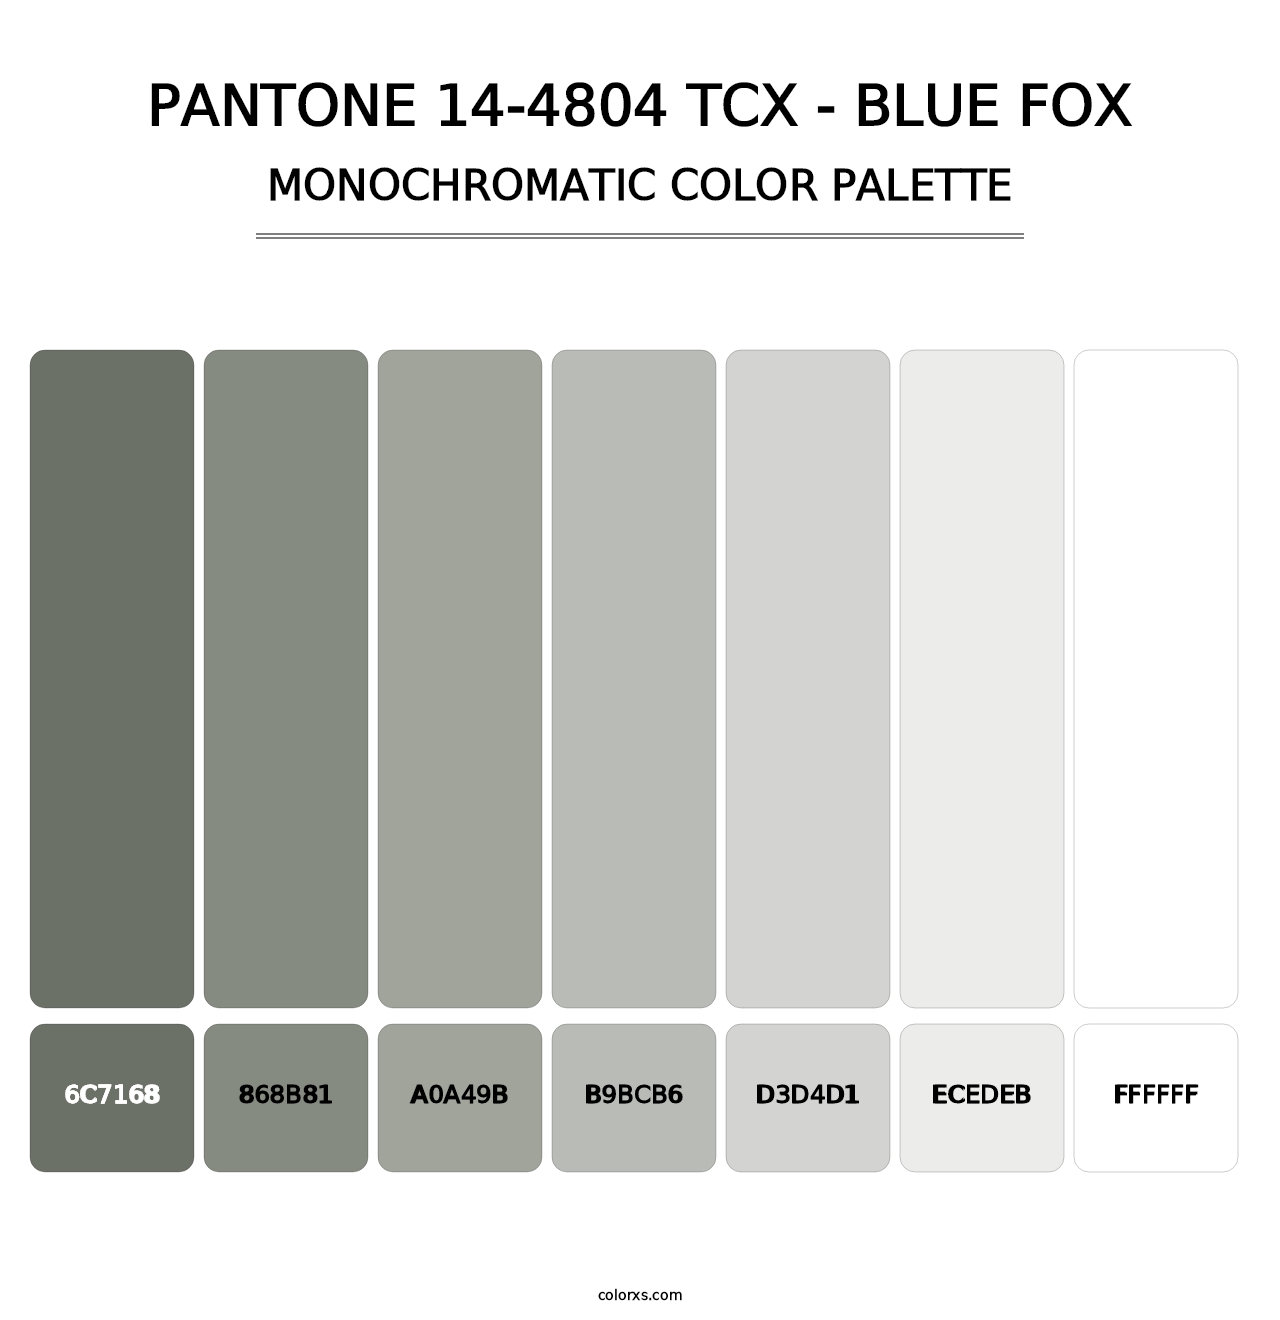 PANTONE 14-4804 TCX - Blue Fox - Monochromatic Color Palette